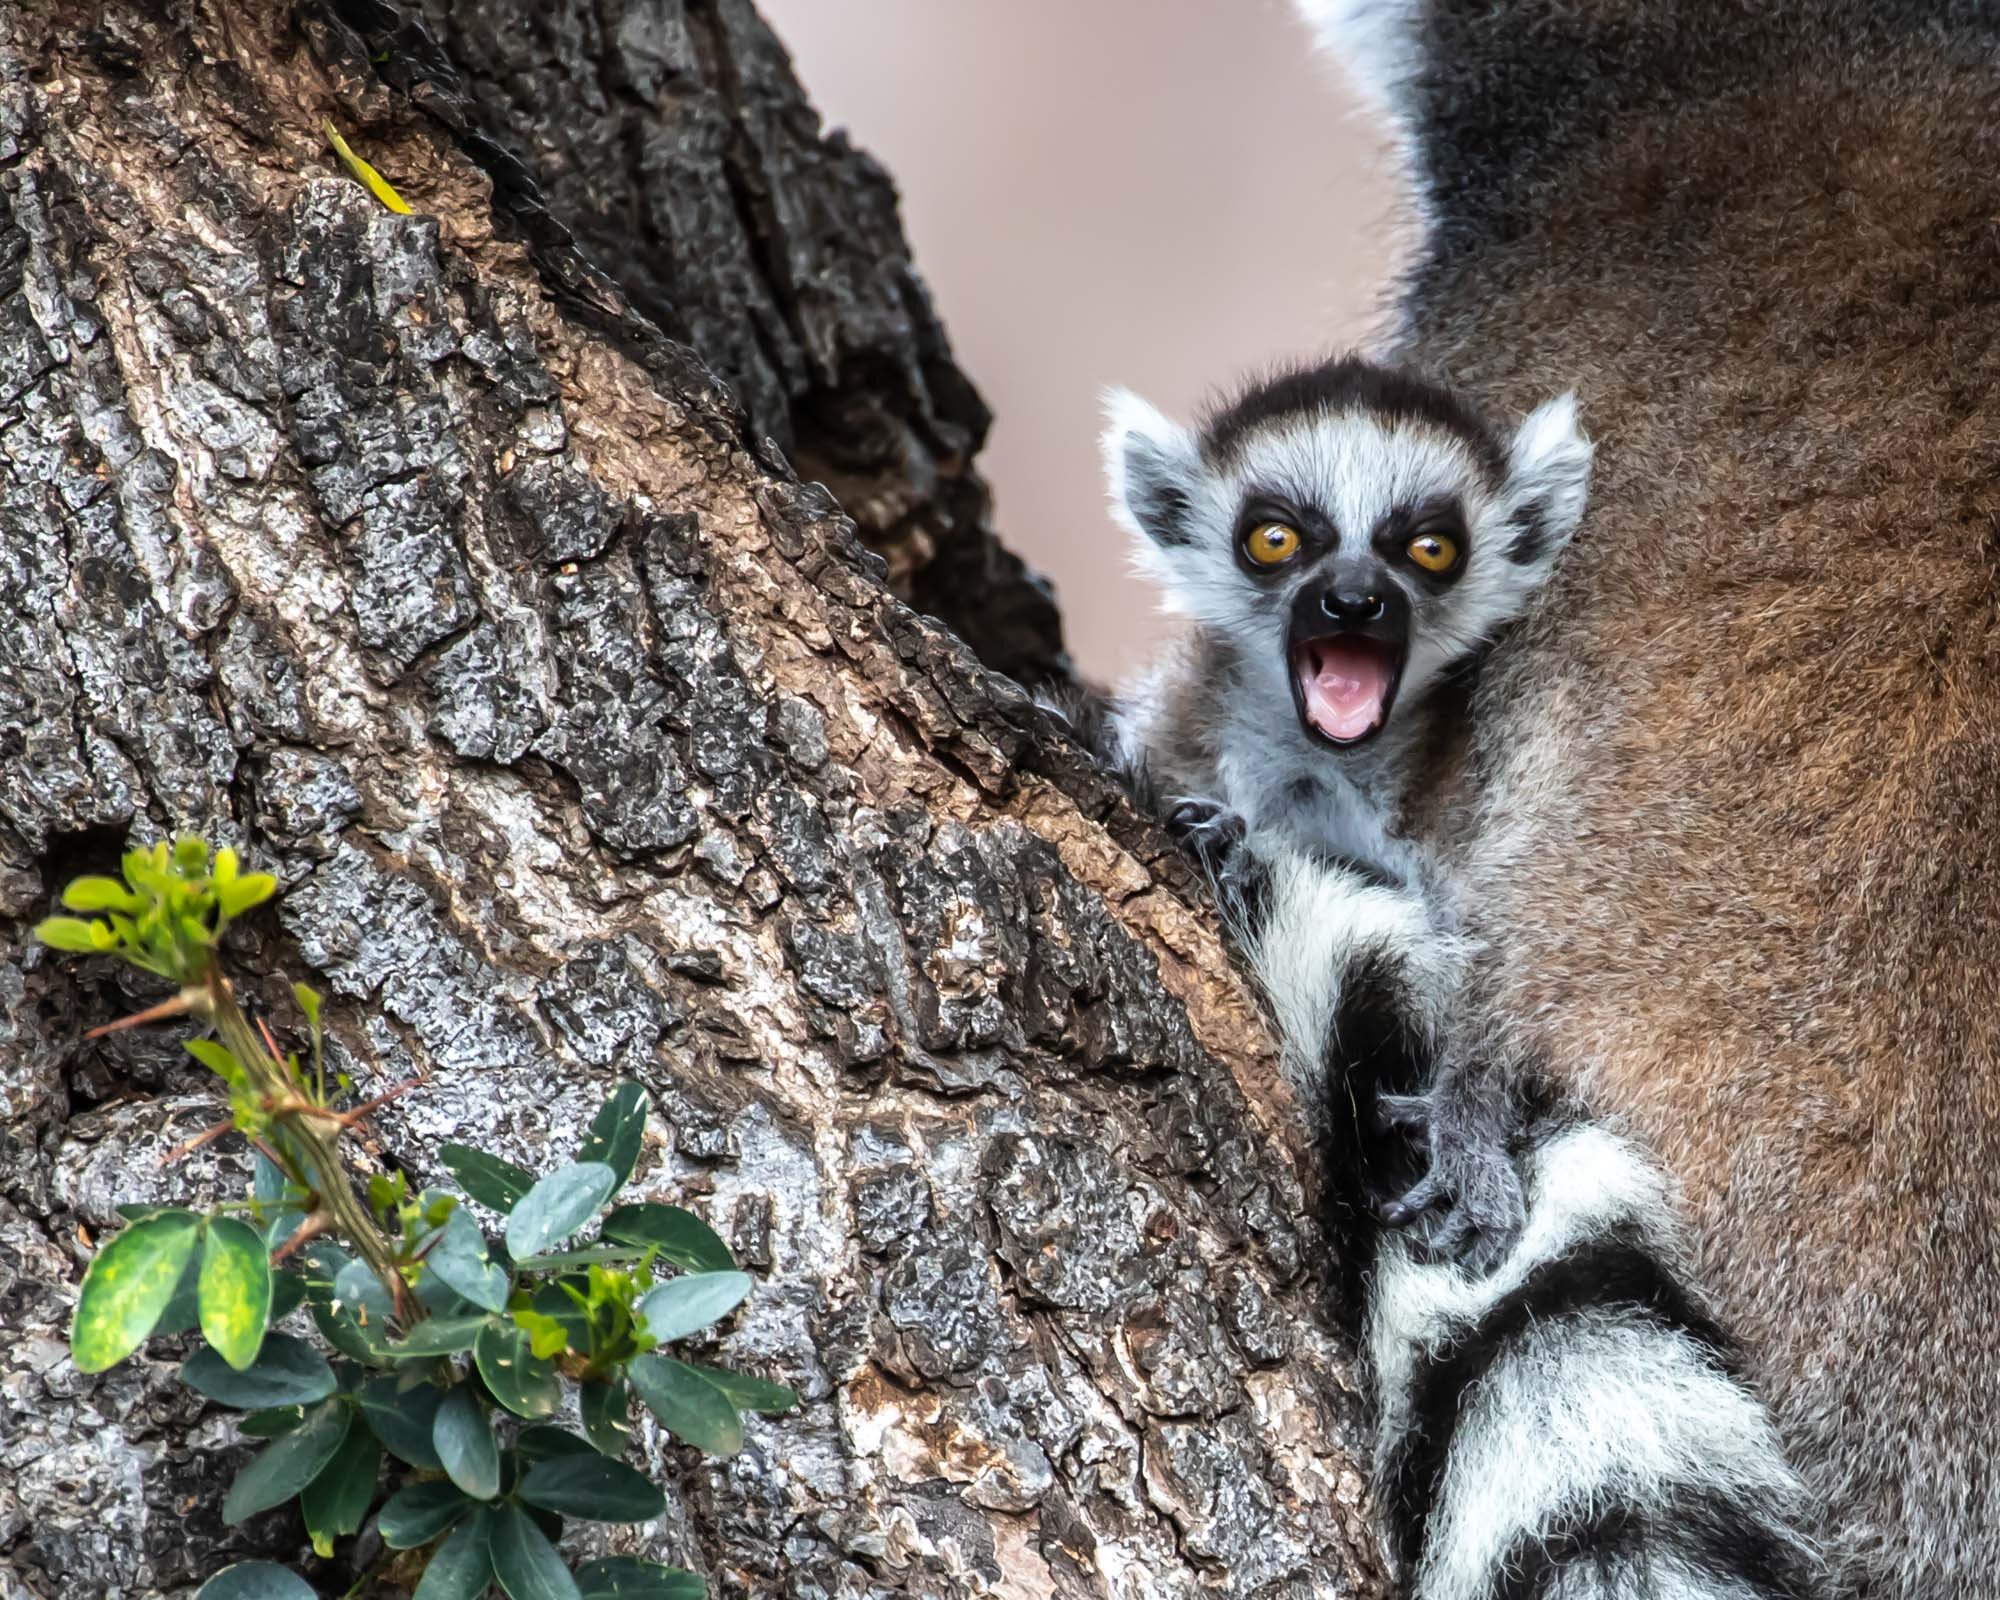 Lemur_at_Honolulu_Zoo_20190628_©HowardWolff-1.jpg